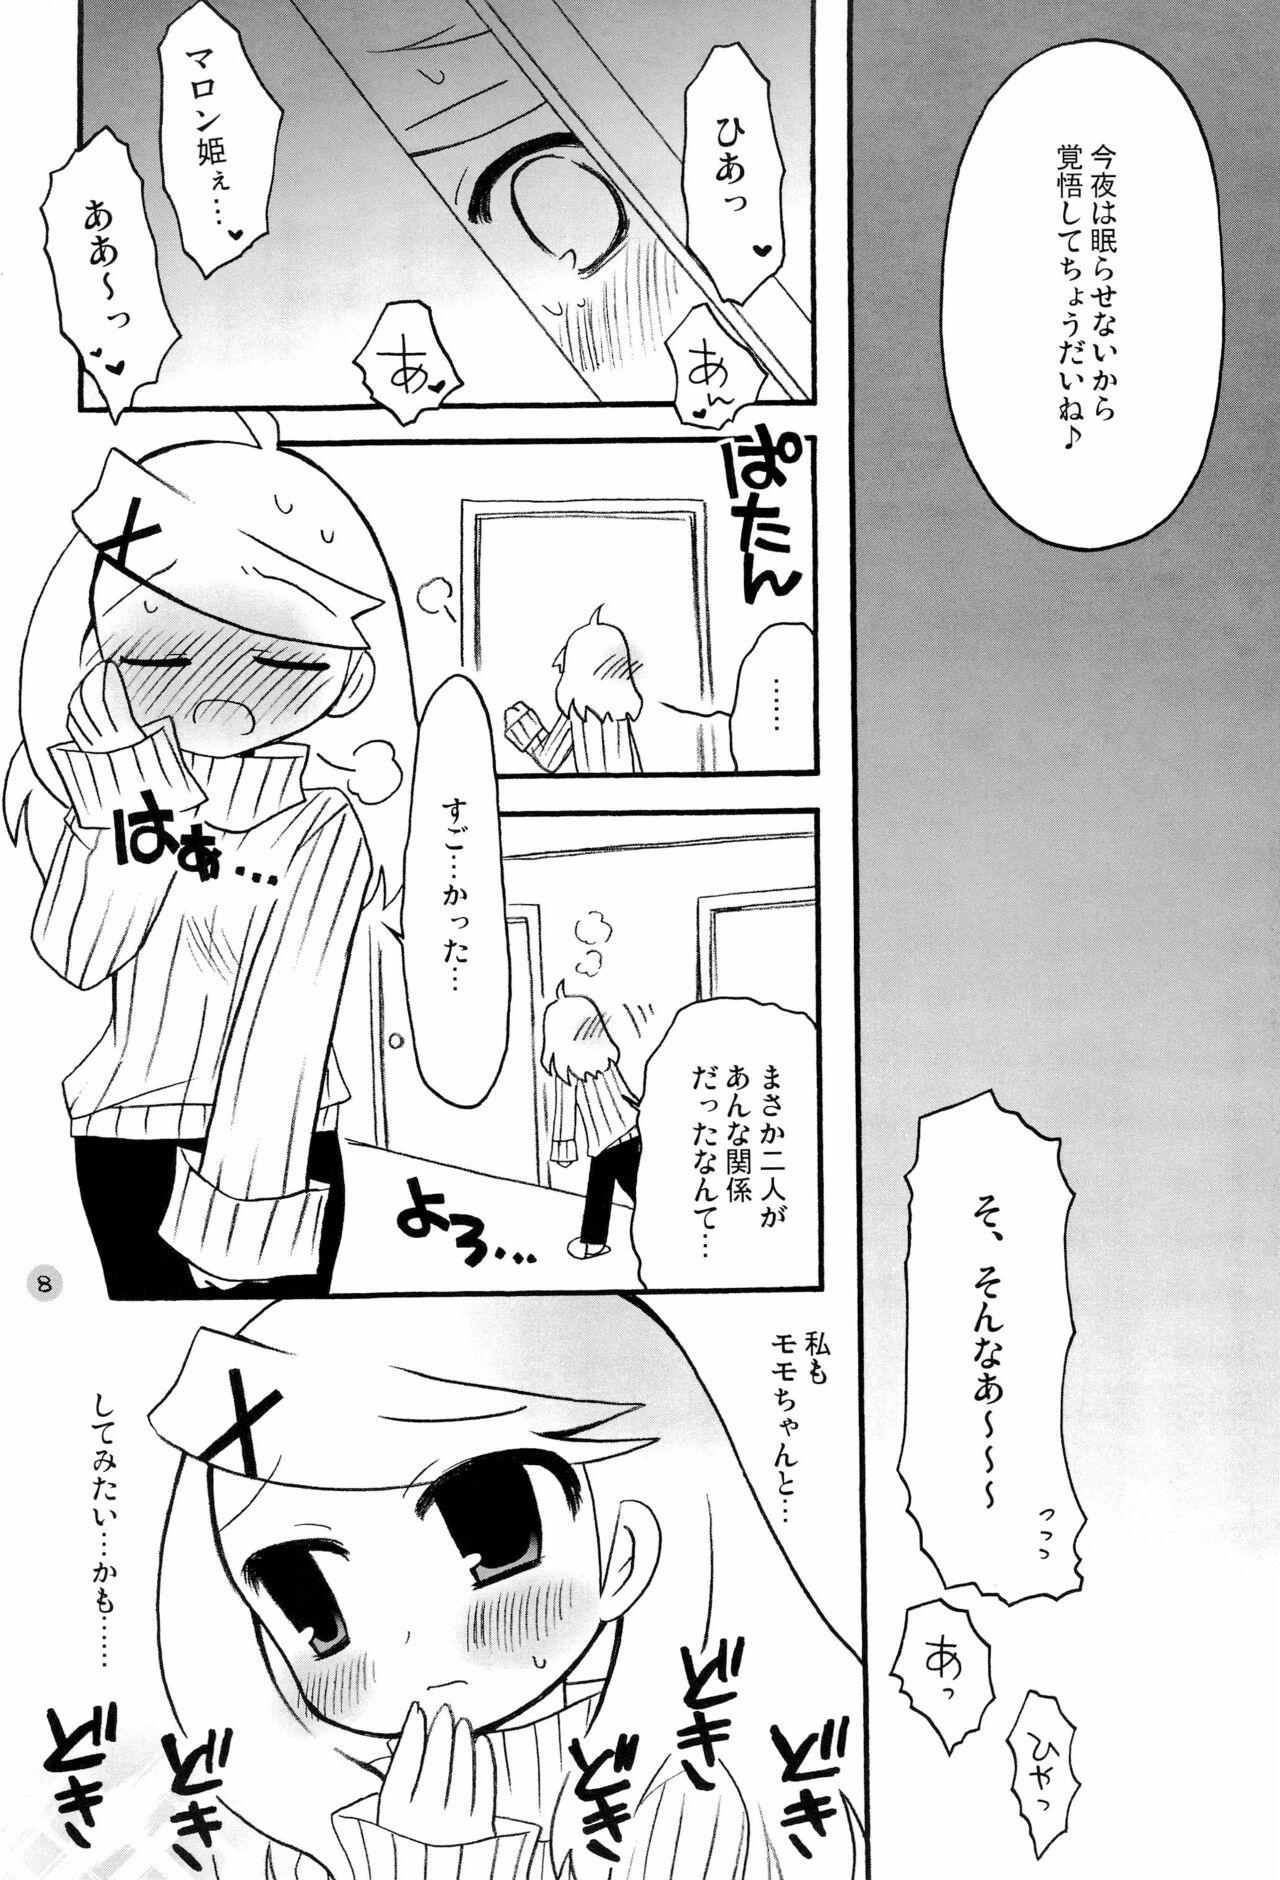 Blacks Harumomo no Tsubomi - 7th dragon Sex - Page 8